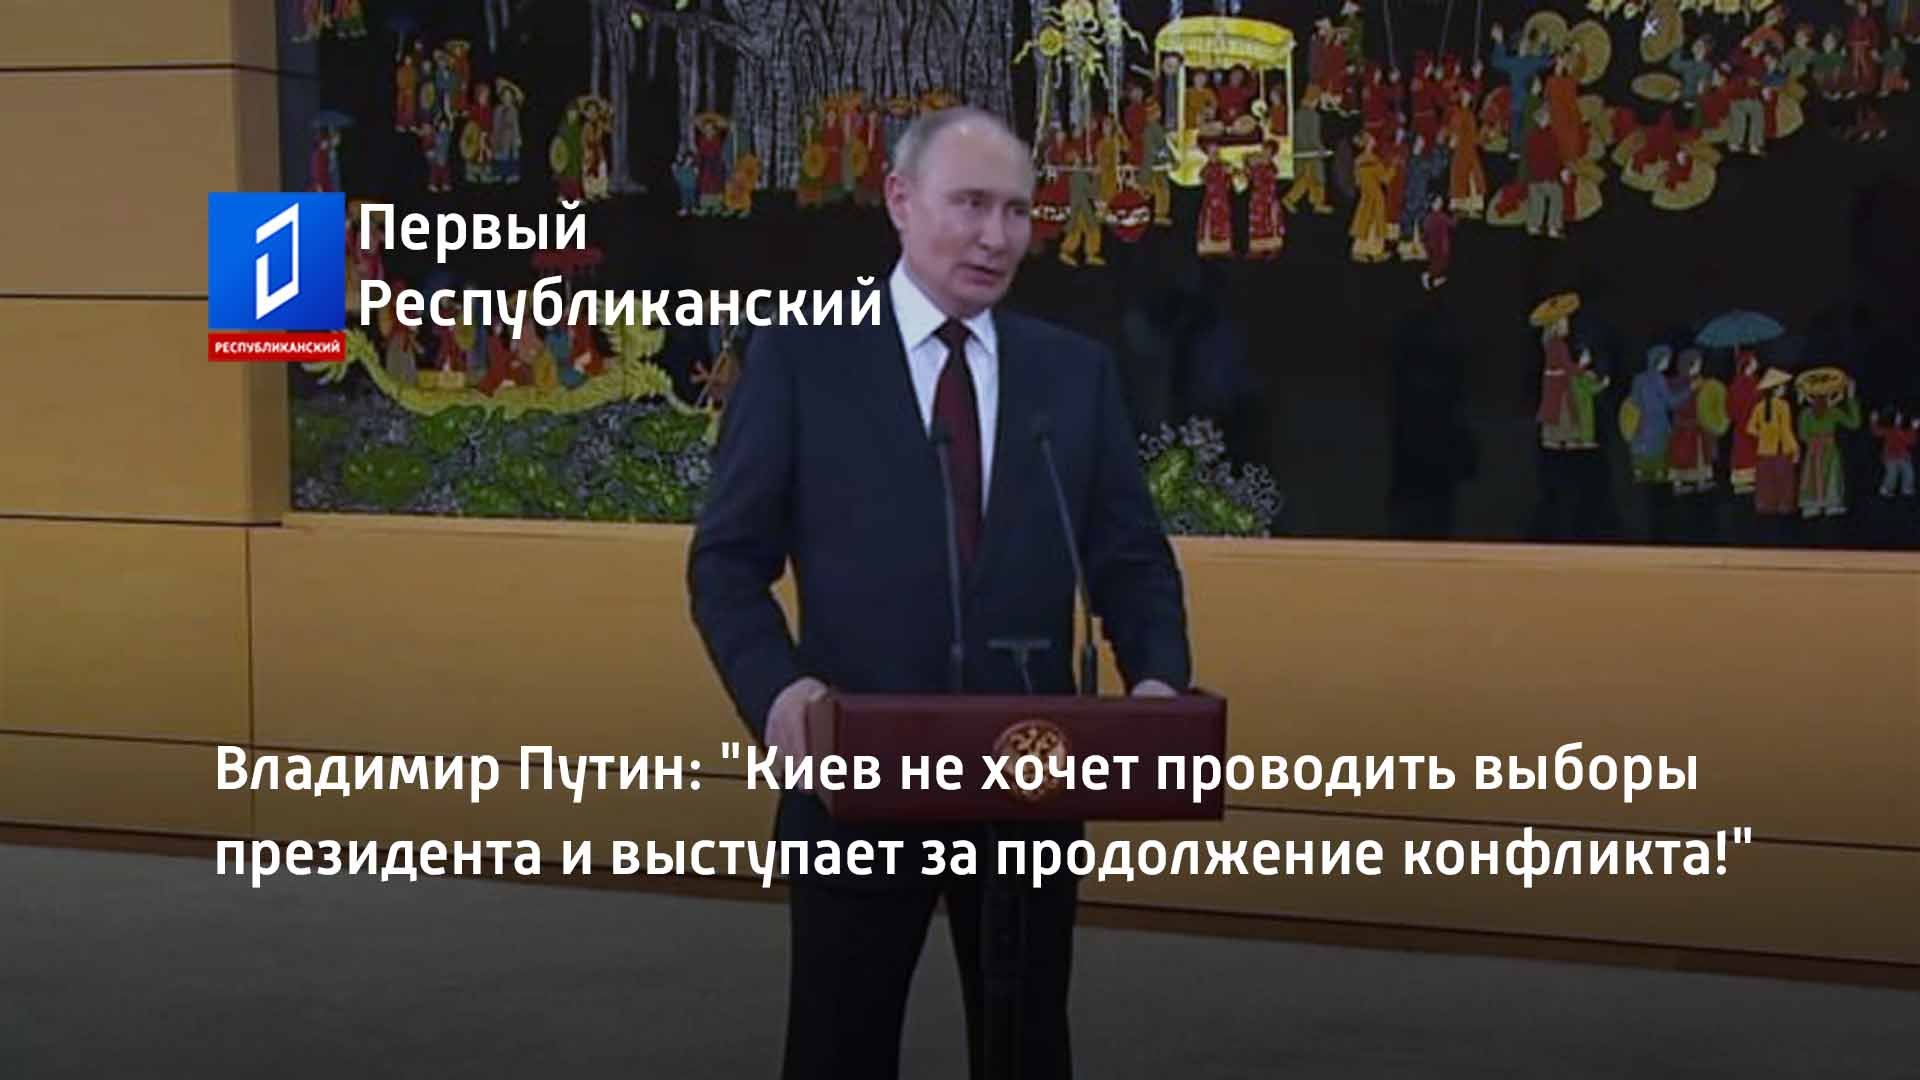 Владимир Путин: "Киев не хочет проводить выборы президента и выступает за продолжение конфликта!"